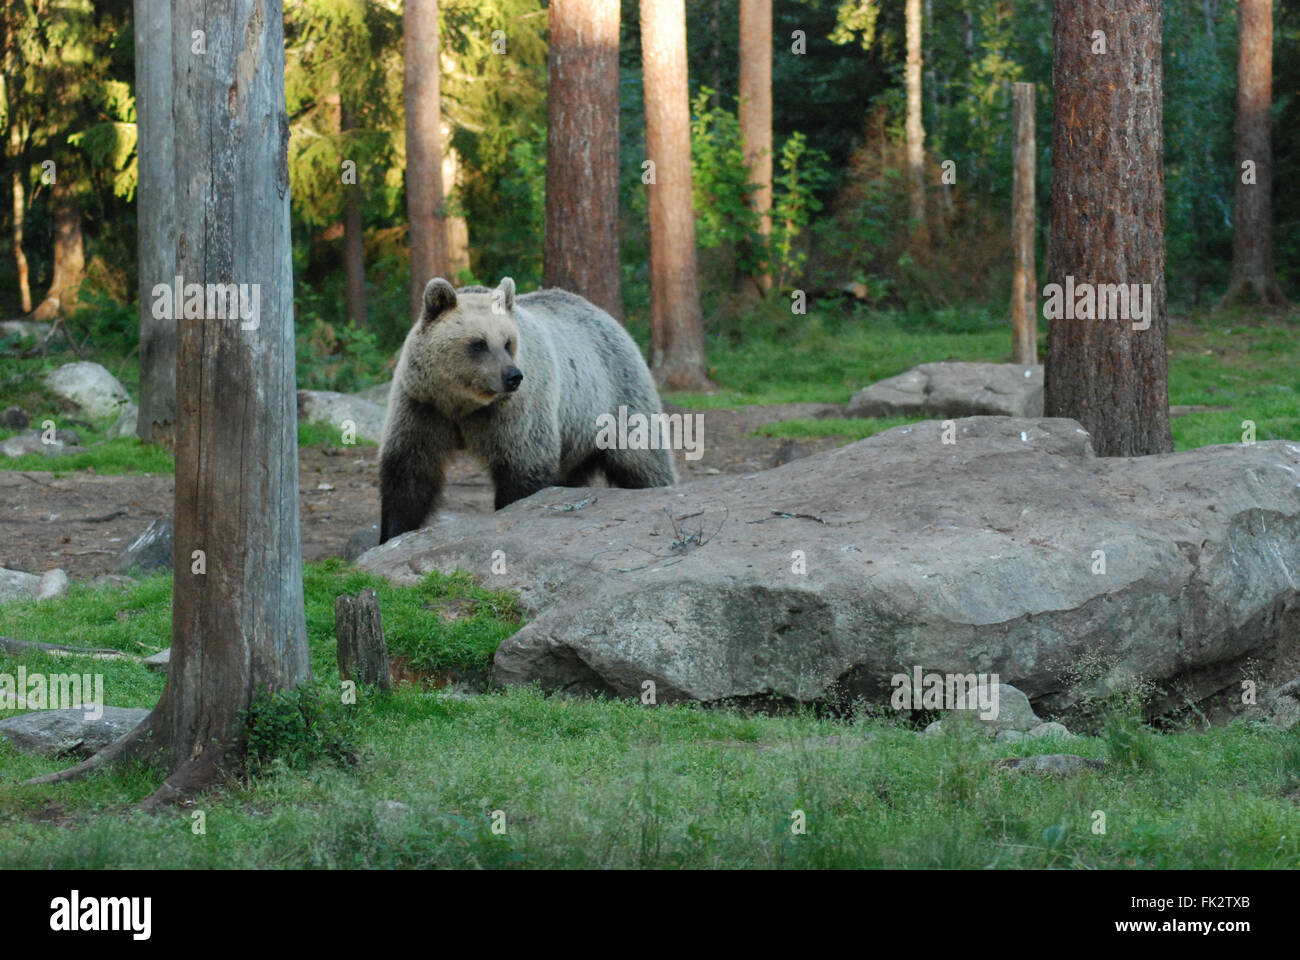 Unione di orso bruno eurasiatico o l'orso bruno (Ursus arctos arctos) nella Taiga habitat della foresta in Finlandia orientale. Foto Stock